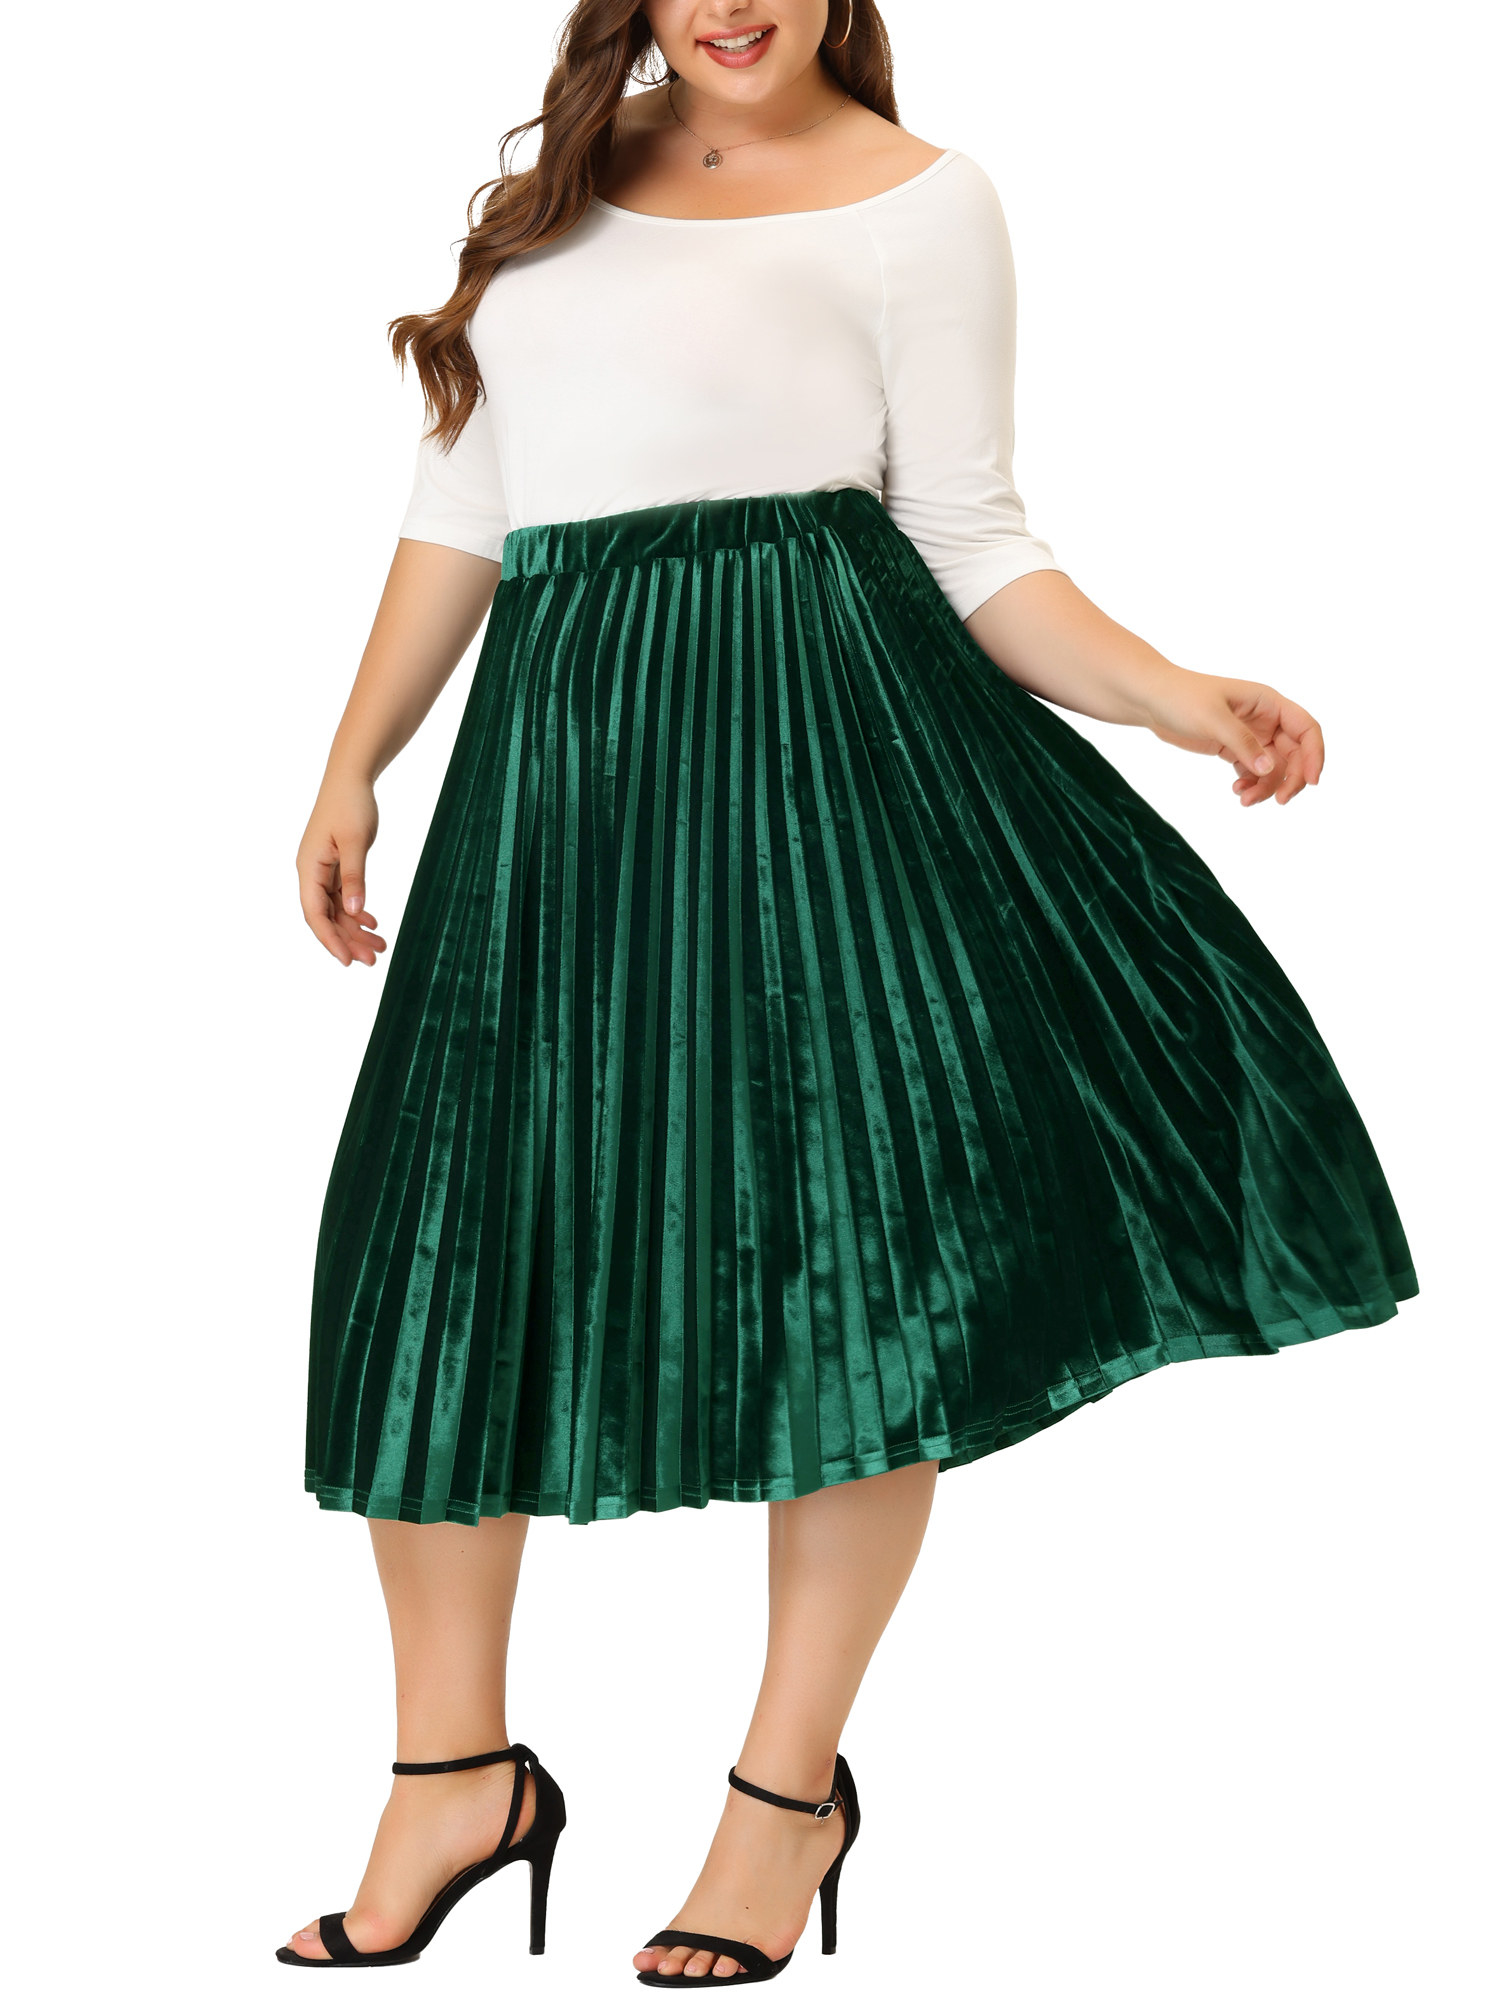 Model wearing the dark green skirt